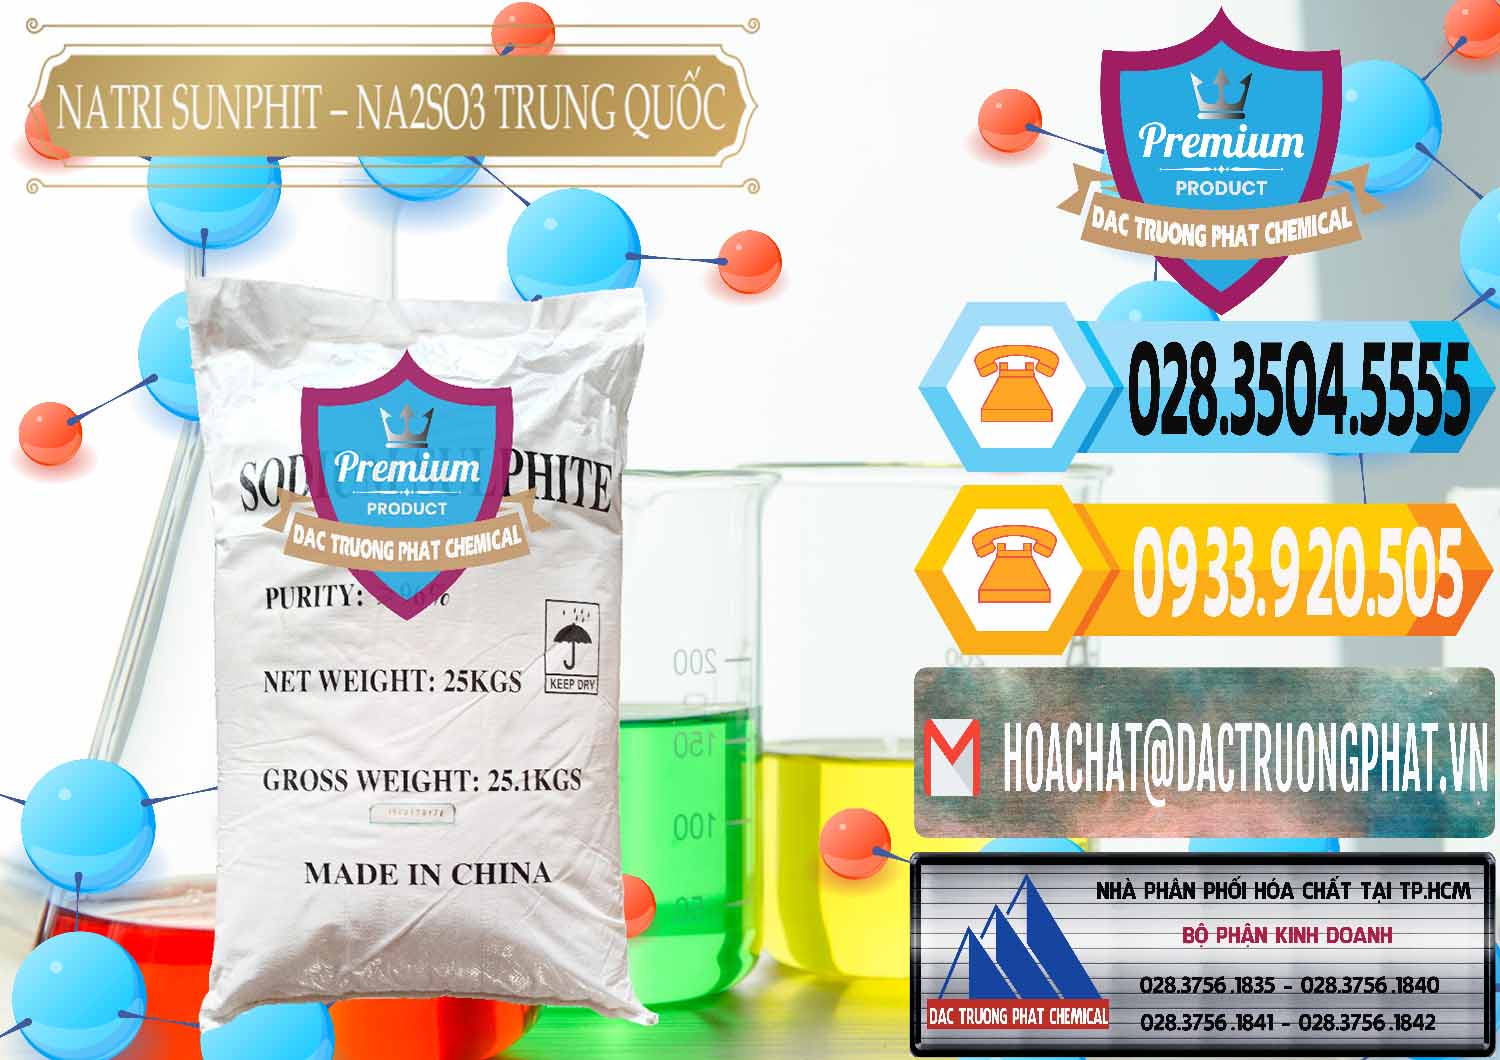 Công ty cung cấp và bán Natri Sunphit - NA2SO3 Trung Quốc China - 0106 - Chuyên kinh doanh & cung cấp hóa chất tại TP.HCM - hoachattayrua.net